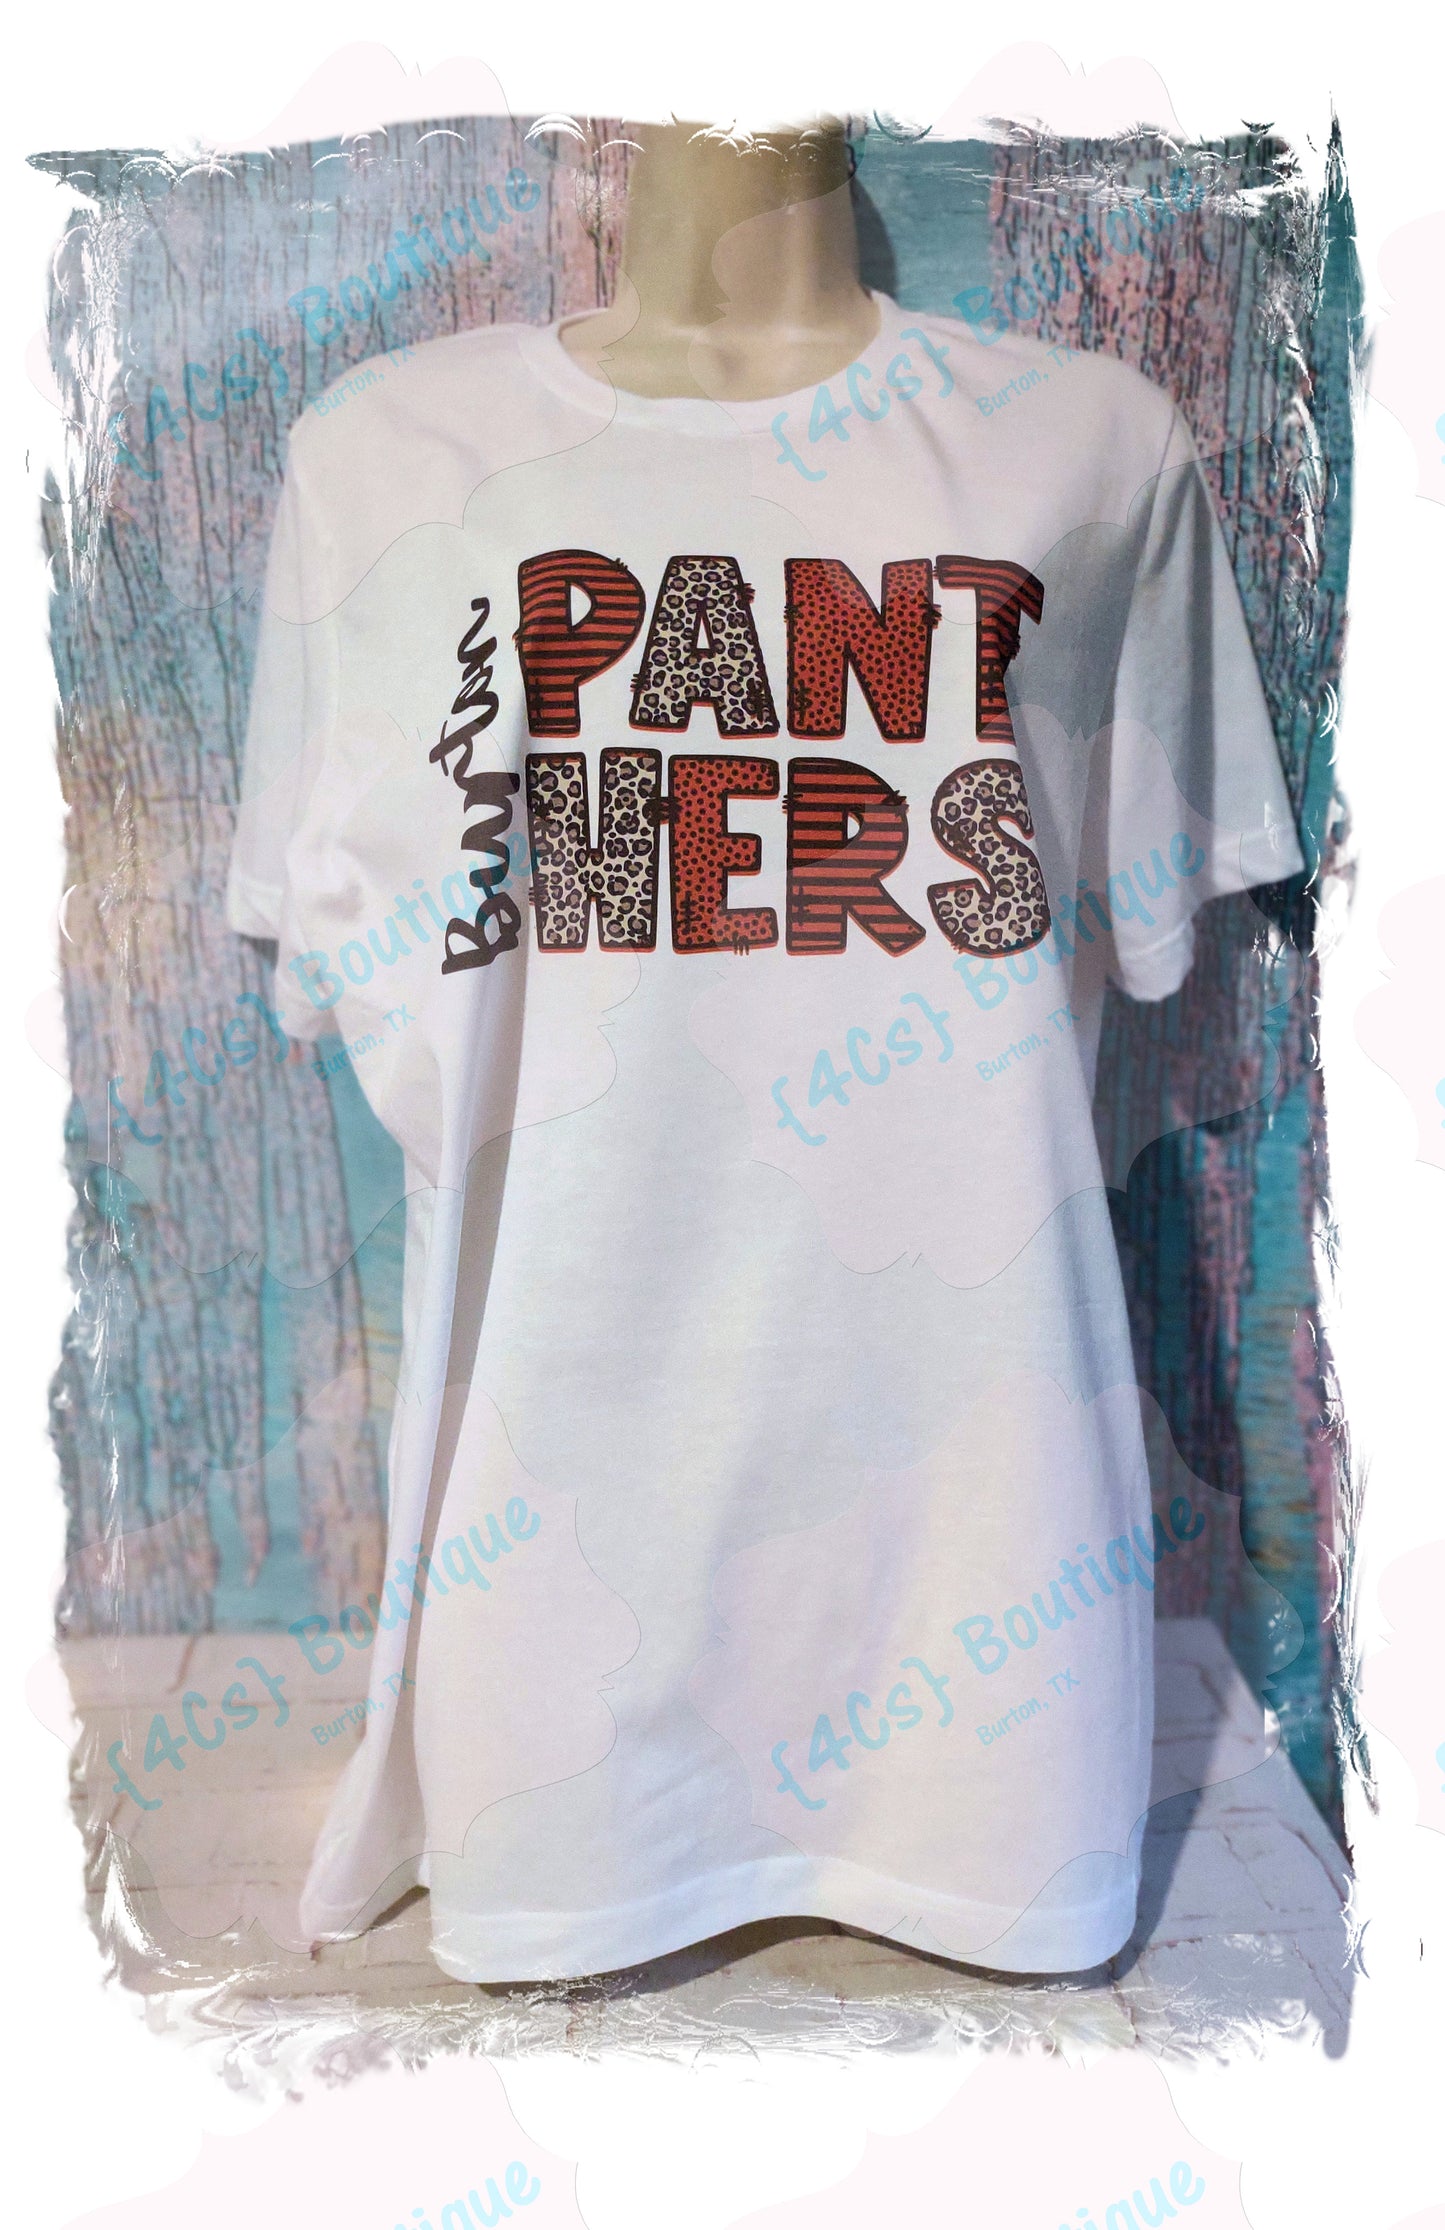 Burton Panthers (4Cs Boutique Exclusive Design) Sublimation Shirt